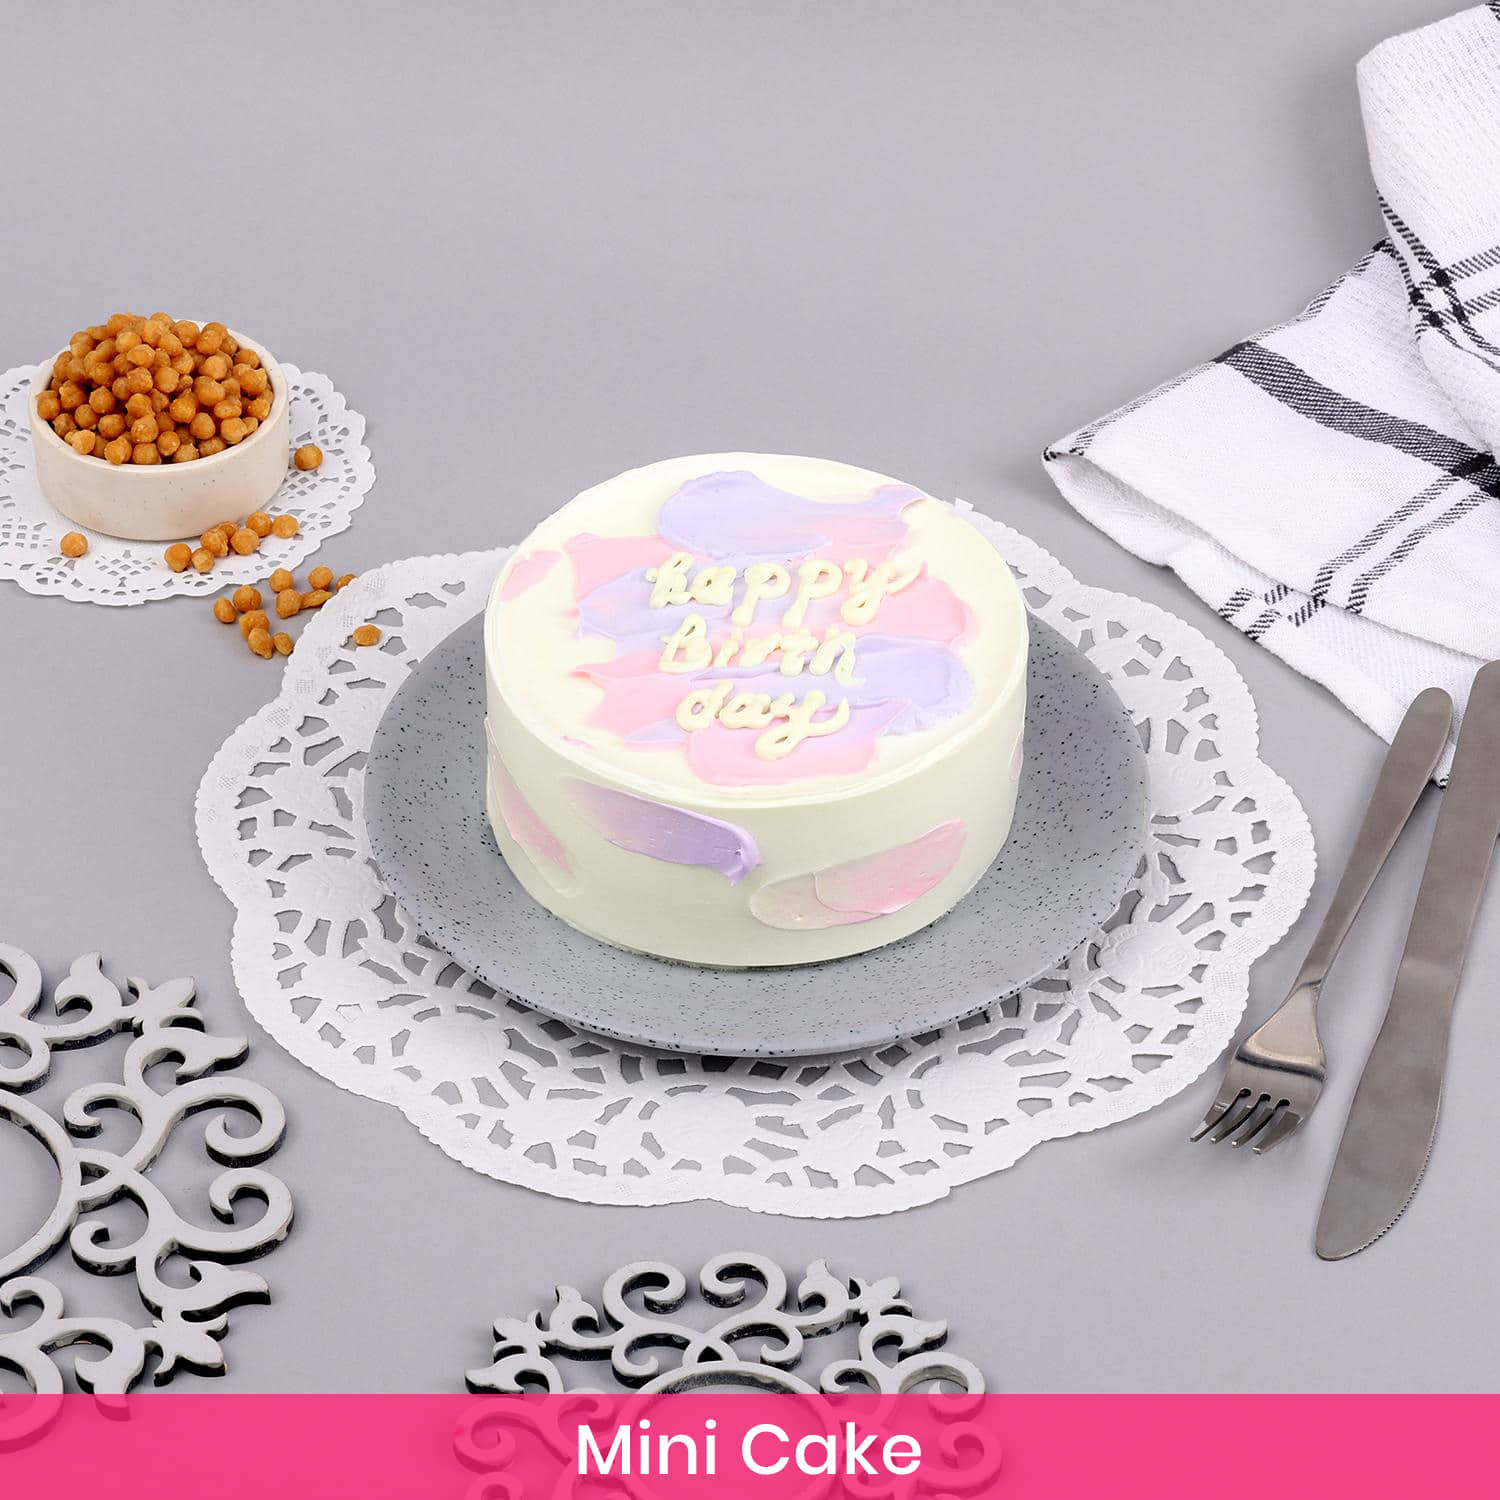 Buy/Send Nogut Cake Online - Winni | Winni.in